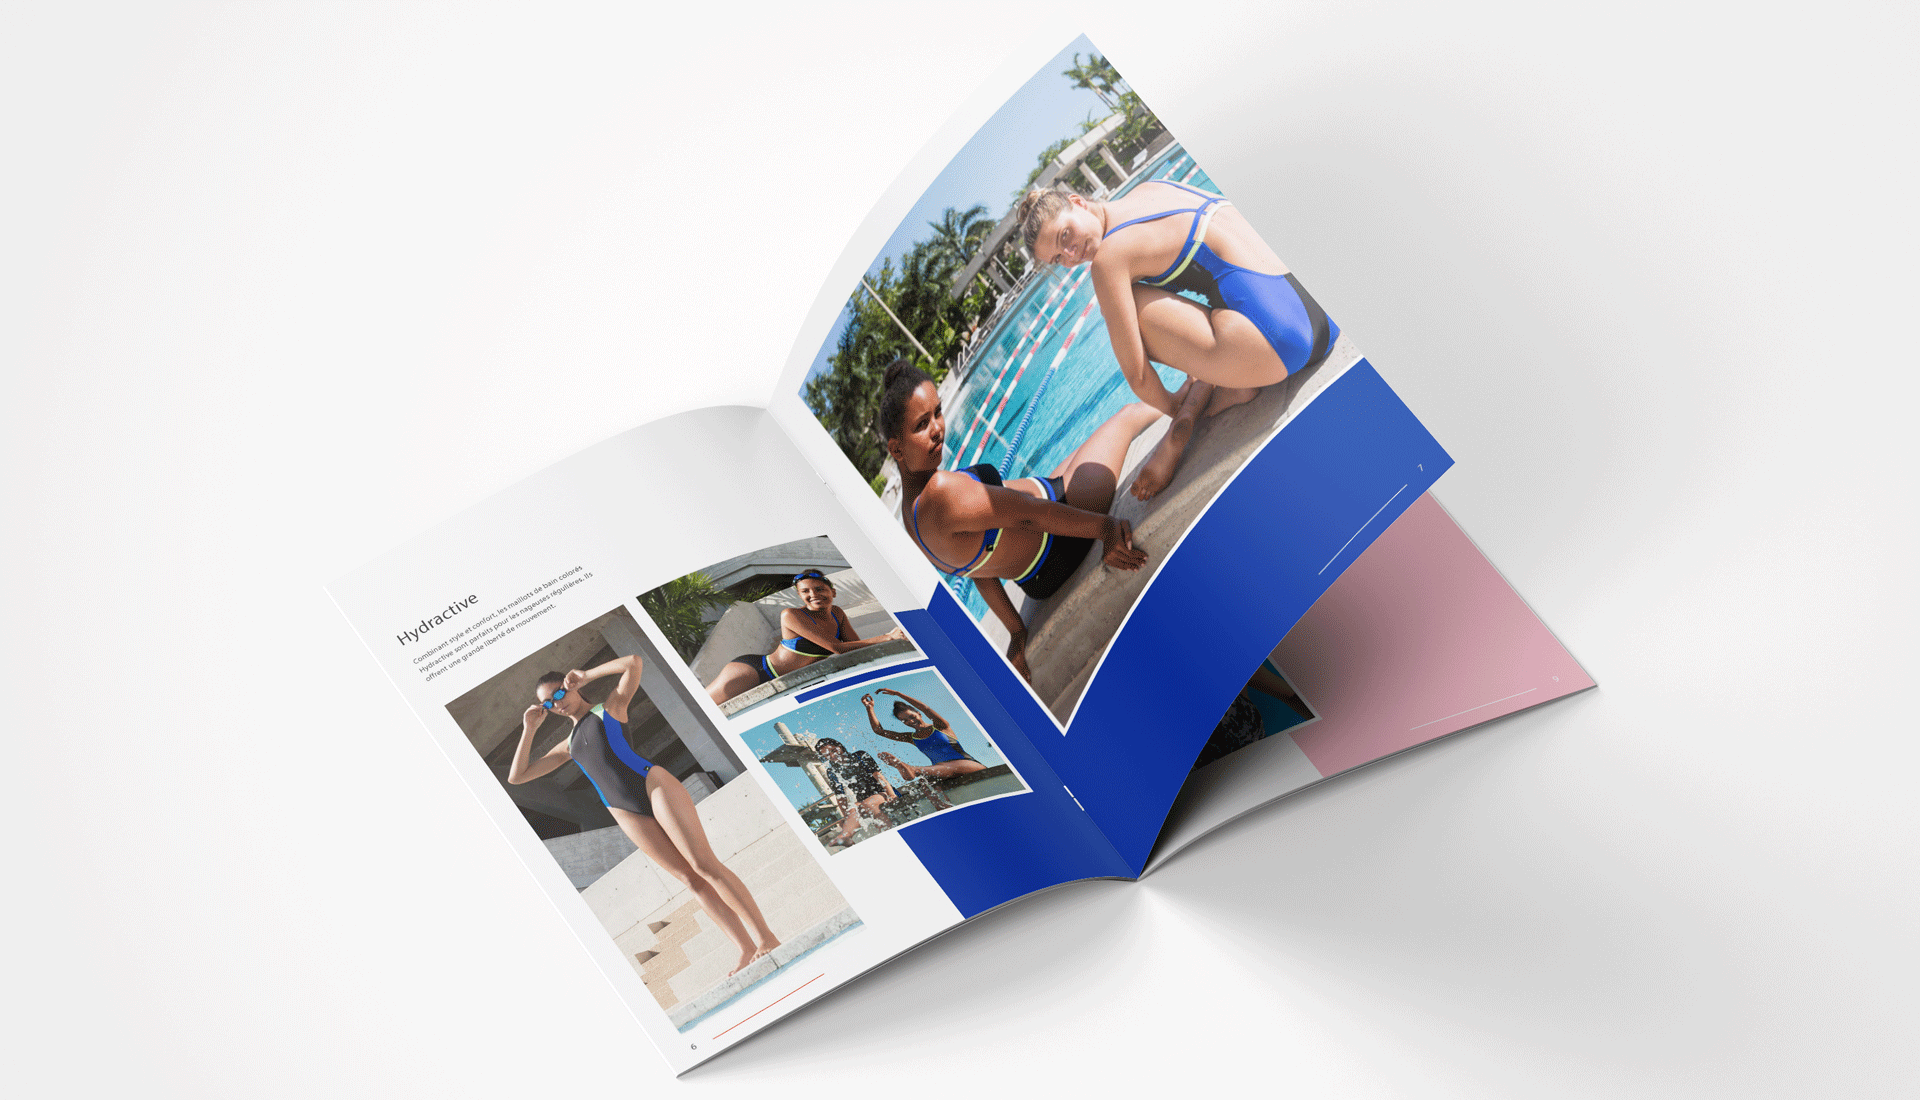 Création du lookbook, maillots de bain de la marque Anglaise Speedo. Support réalisé par l’agence de communication print et digitale Siouxe, à Paris